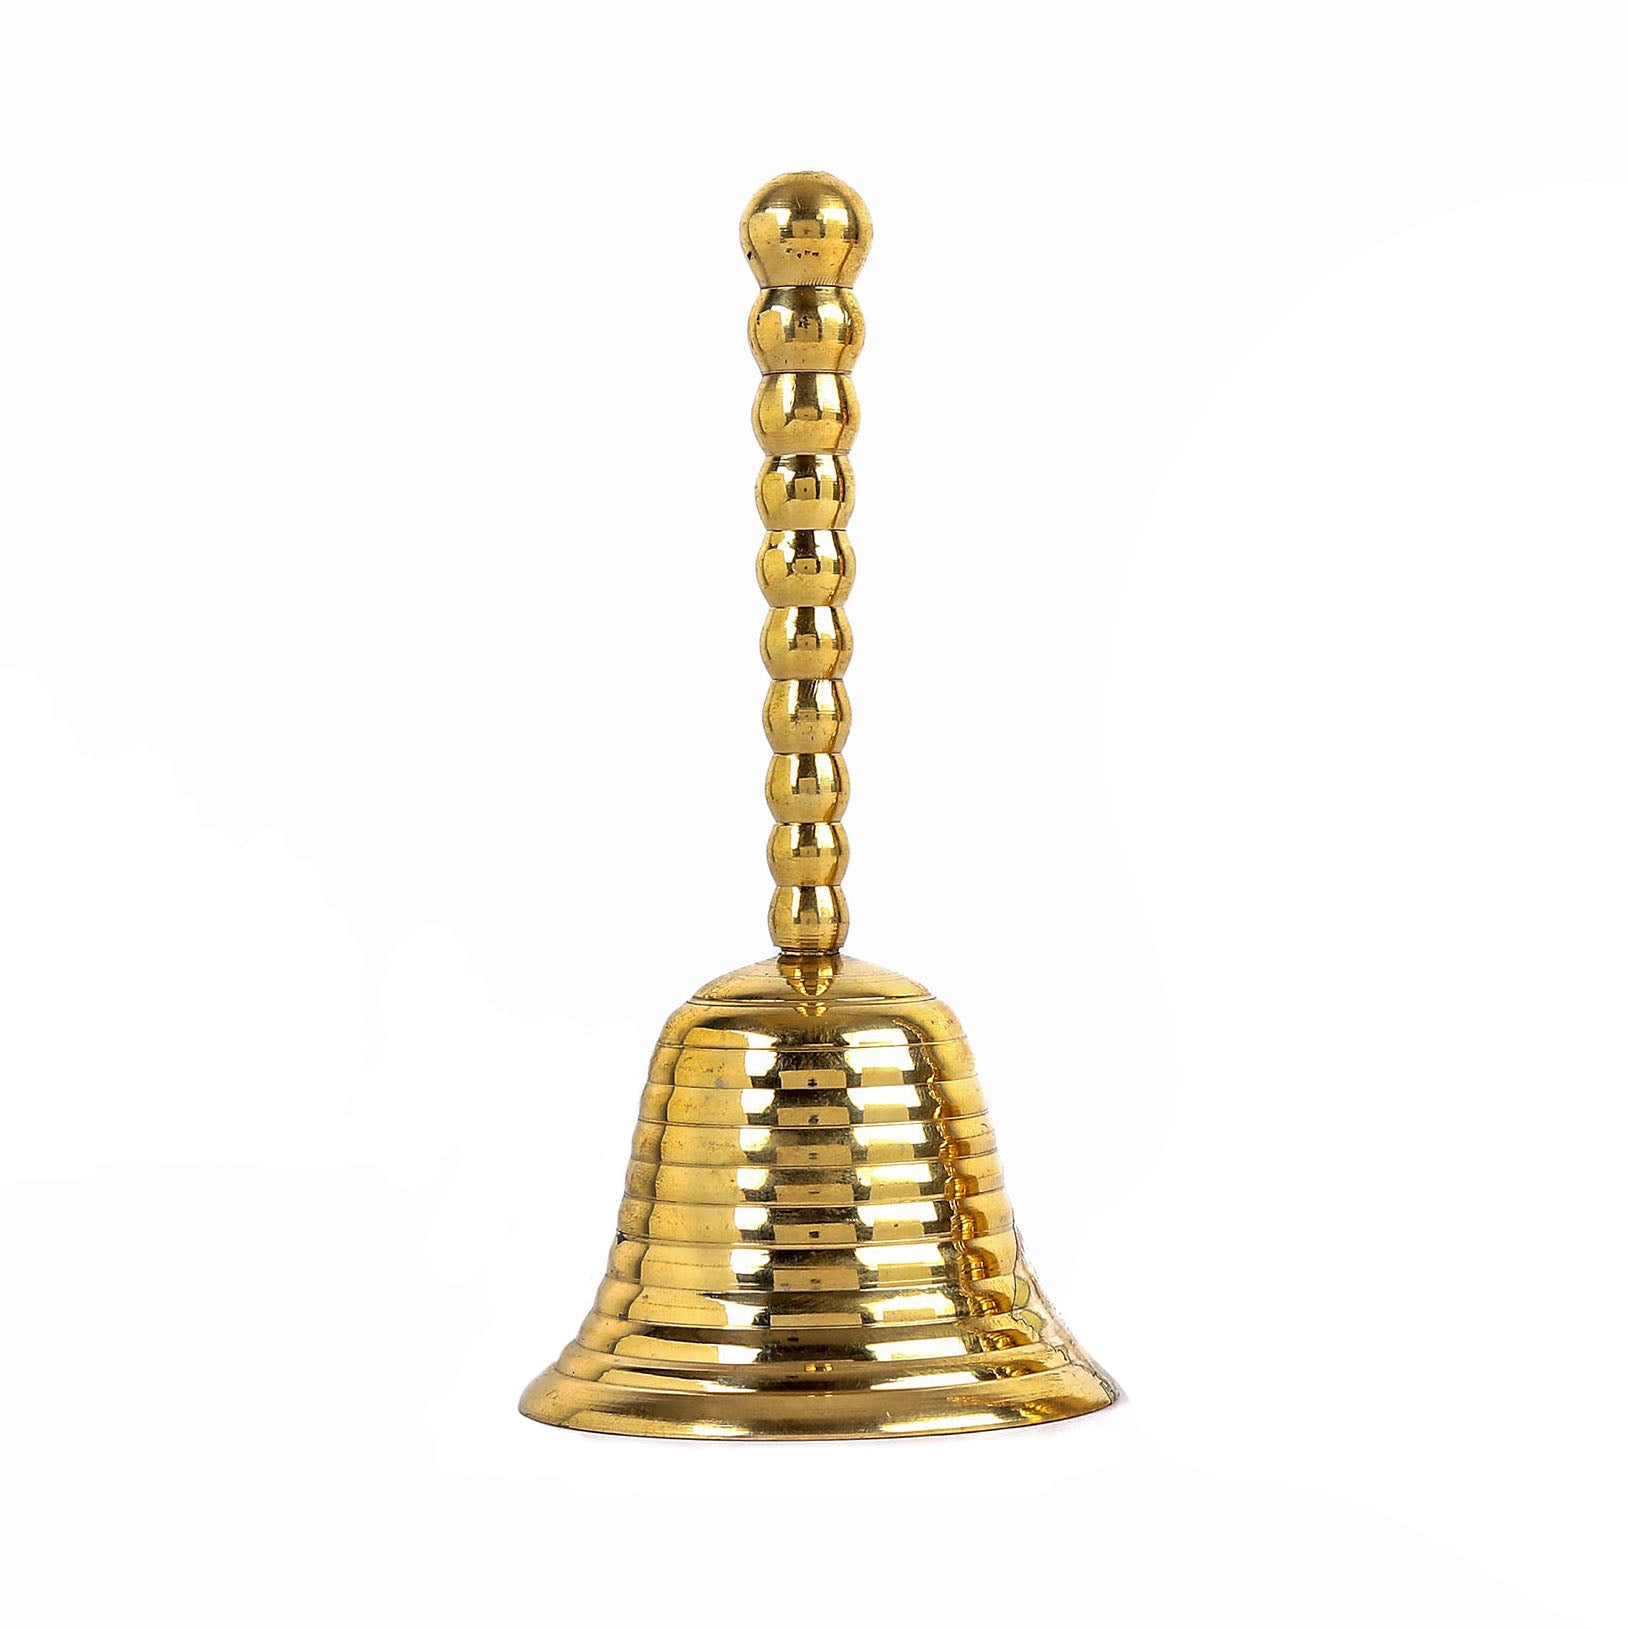 Ribbed Brass Bell ( Medium)